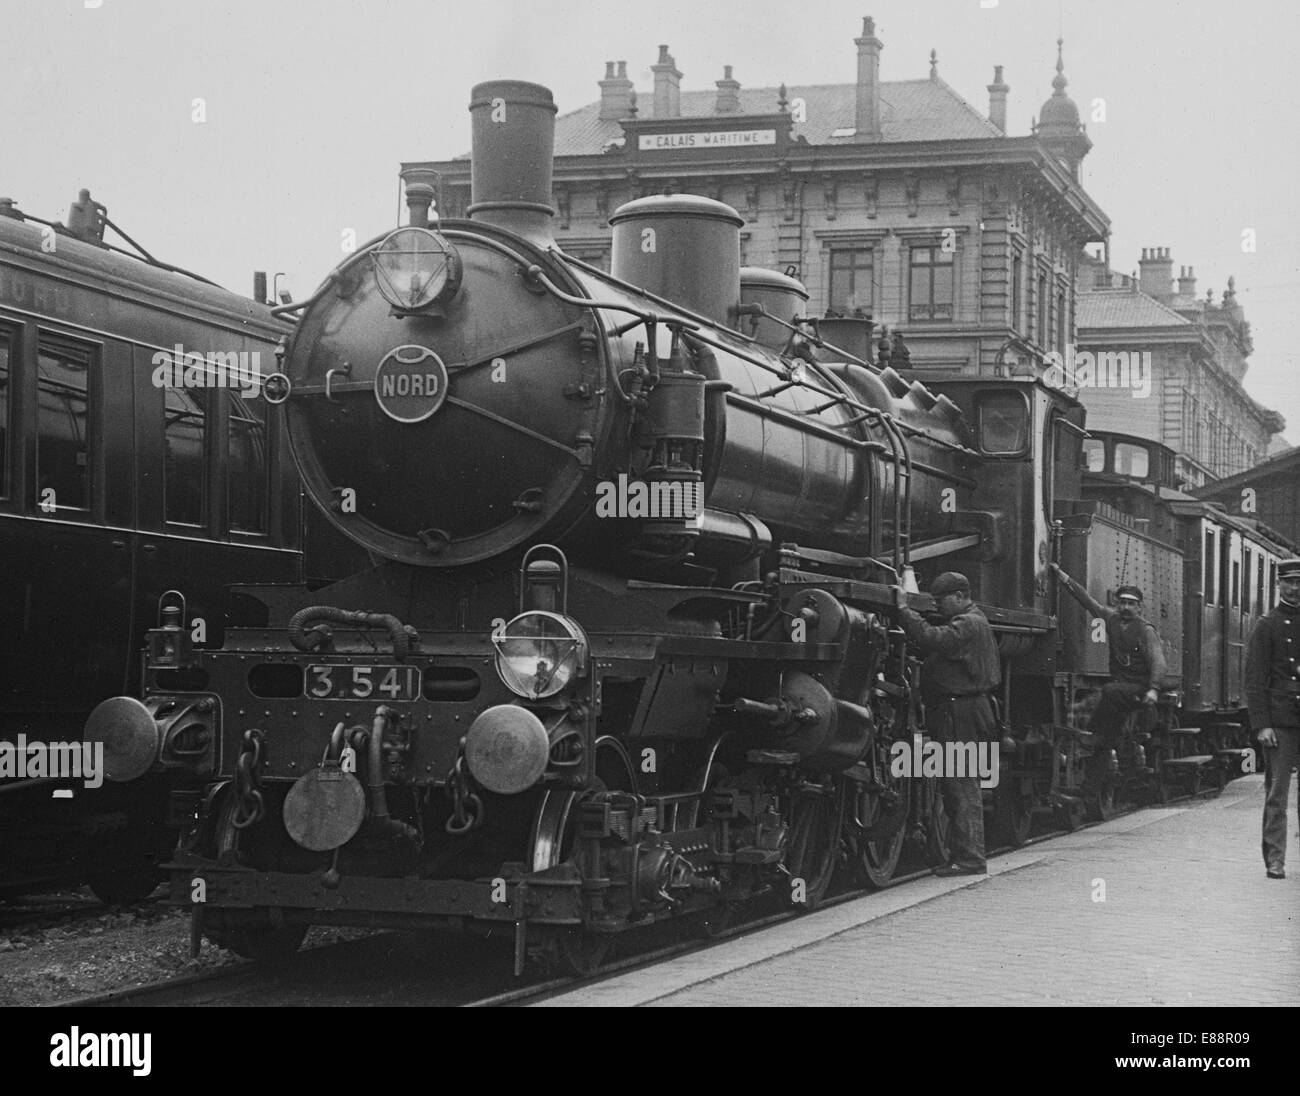 Dampf-Lokomotive in Calais Bahnhof (Gare Maritime), Frankreich, im Jahre 1912. Übernommen aus einem Objektträger Laterne. Stockfoto